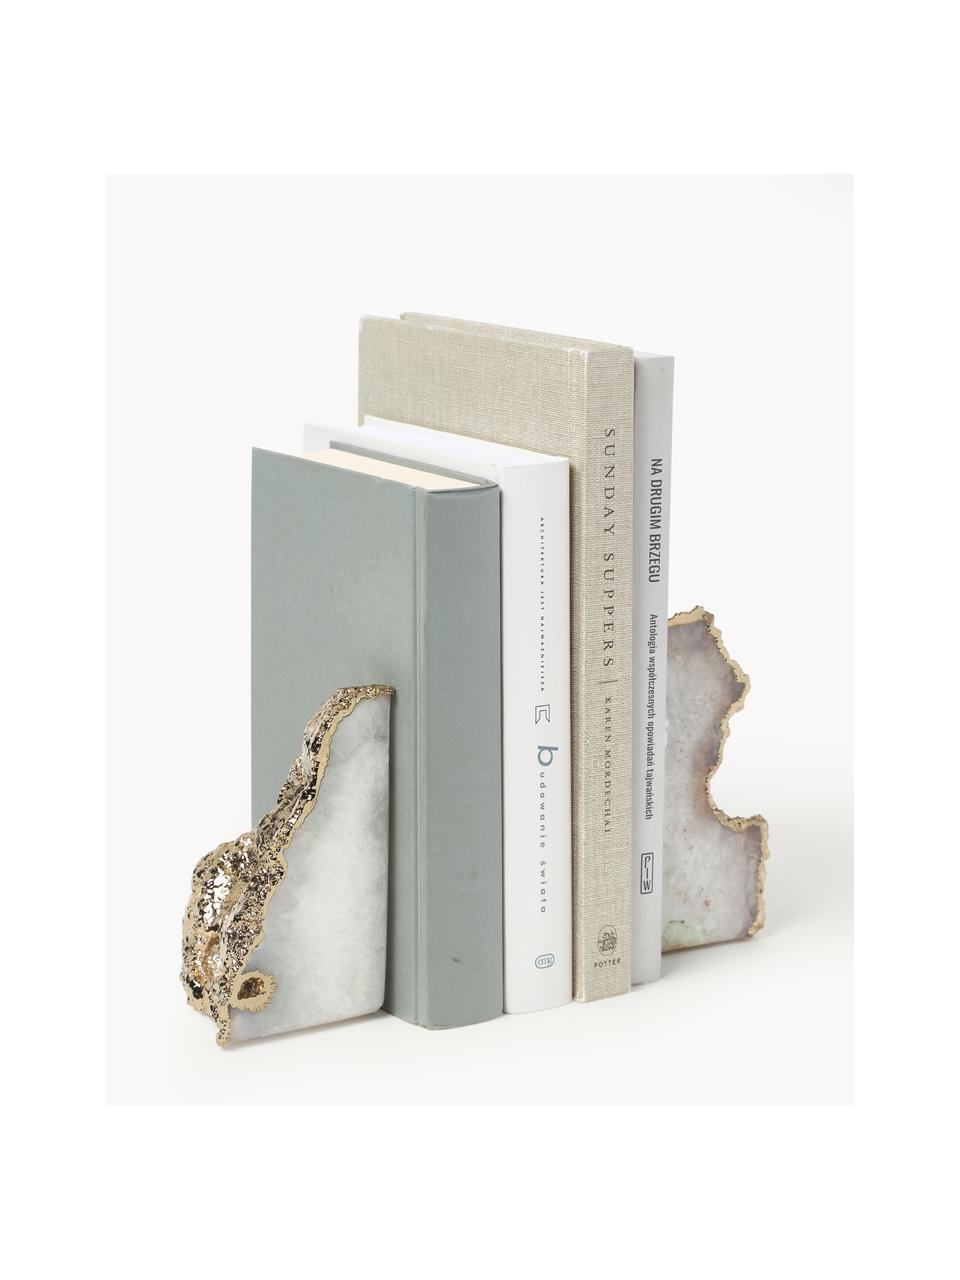 Sada knižních zarážek z křemene Sedona, 2 díly, Křemen, Bílý křemen, zlatá, Š 6 cm, V 10 cm